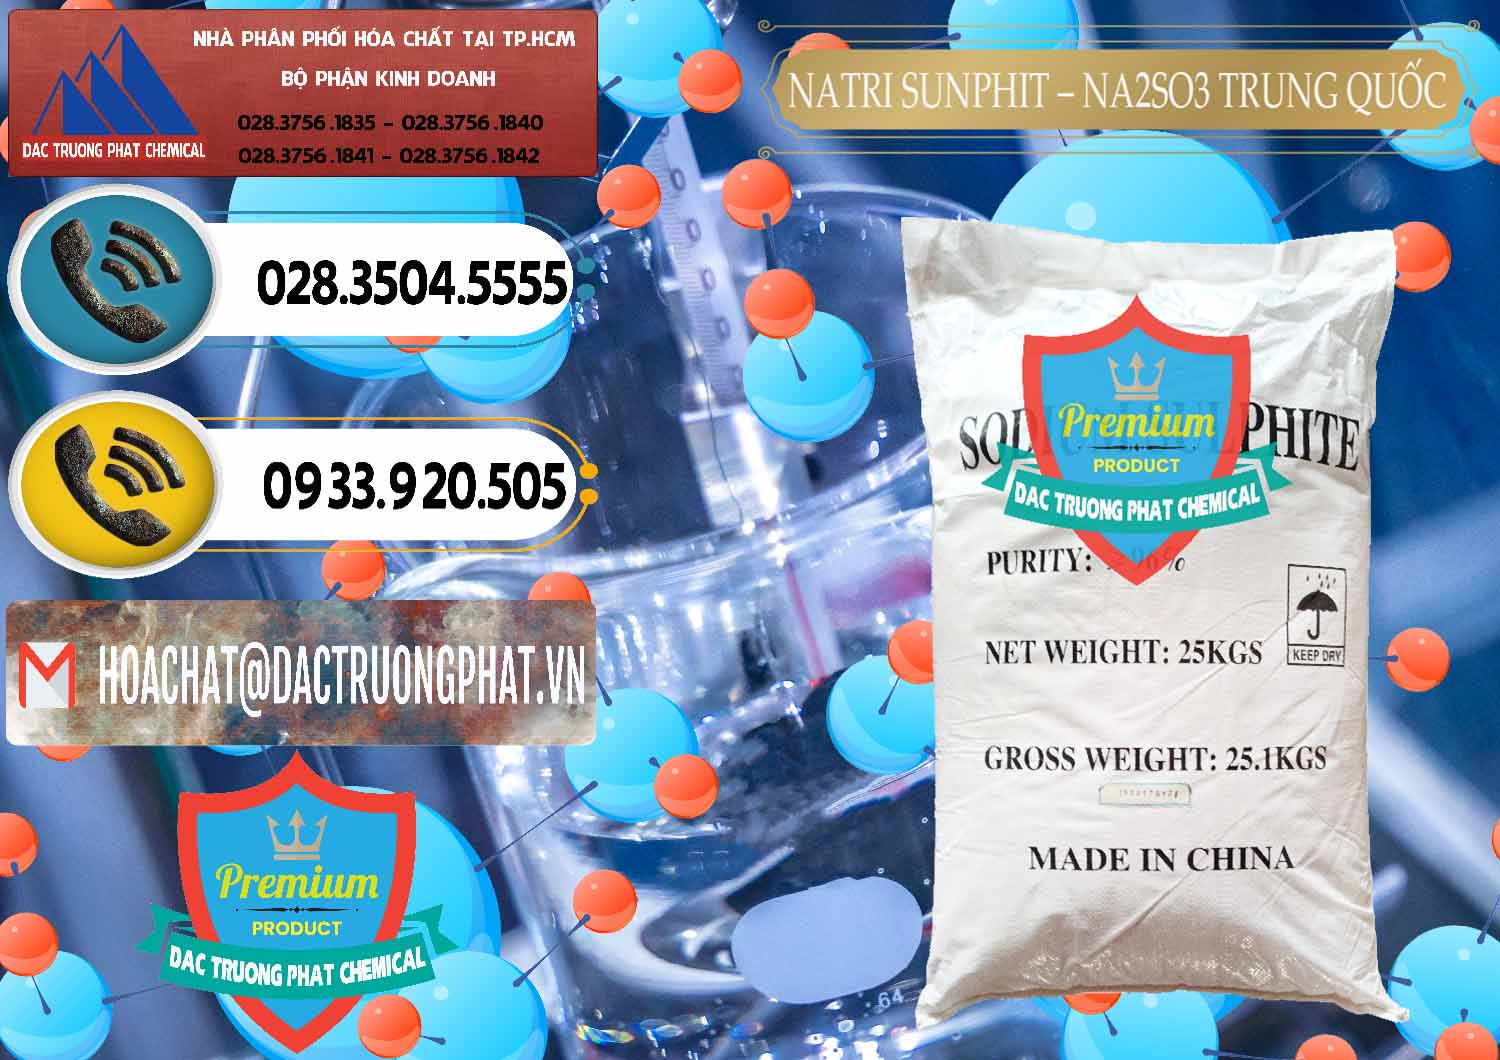 Cty chuyên cung cấp - bán Natri Sunphit - NA2SO3 Trung Quốc China - 0106 - Chuyên kinh doanh & cung cấp hóa chất tại TP.HCM - hoachatdetnhuom.vn